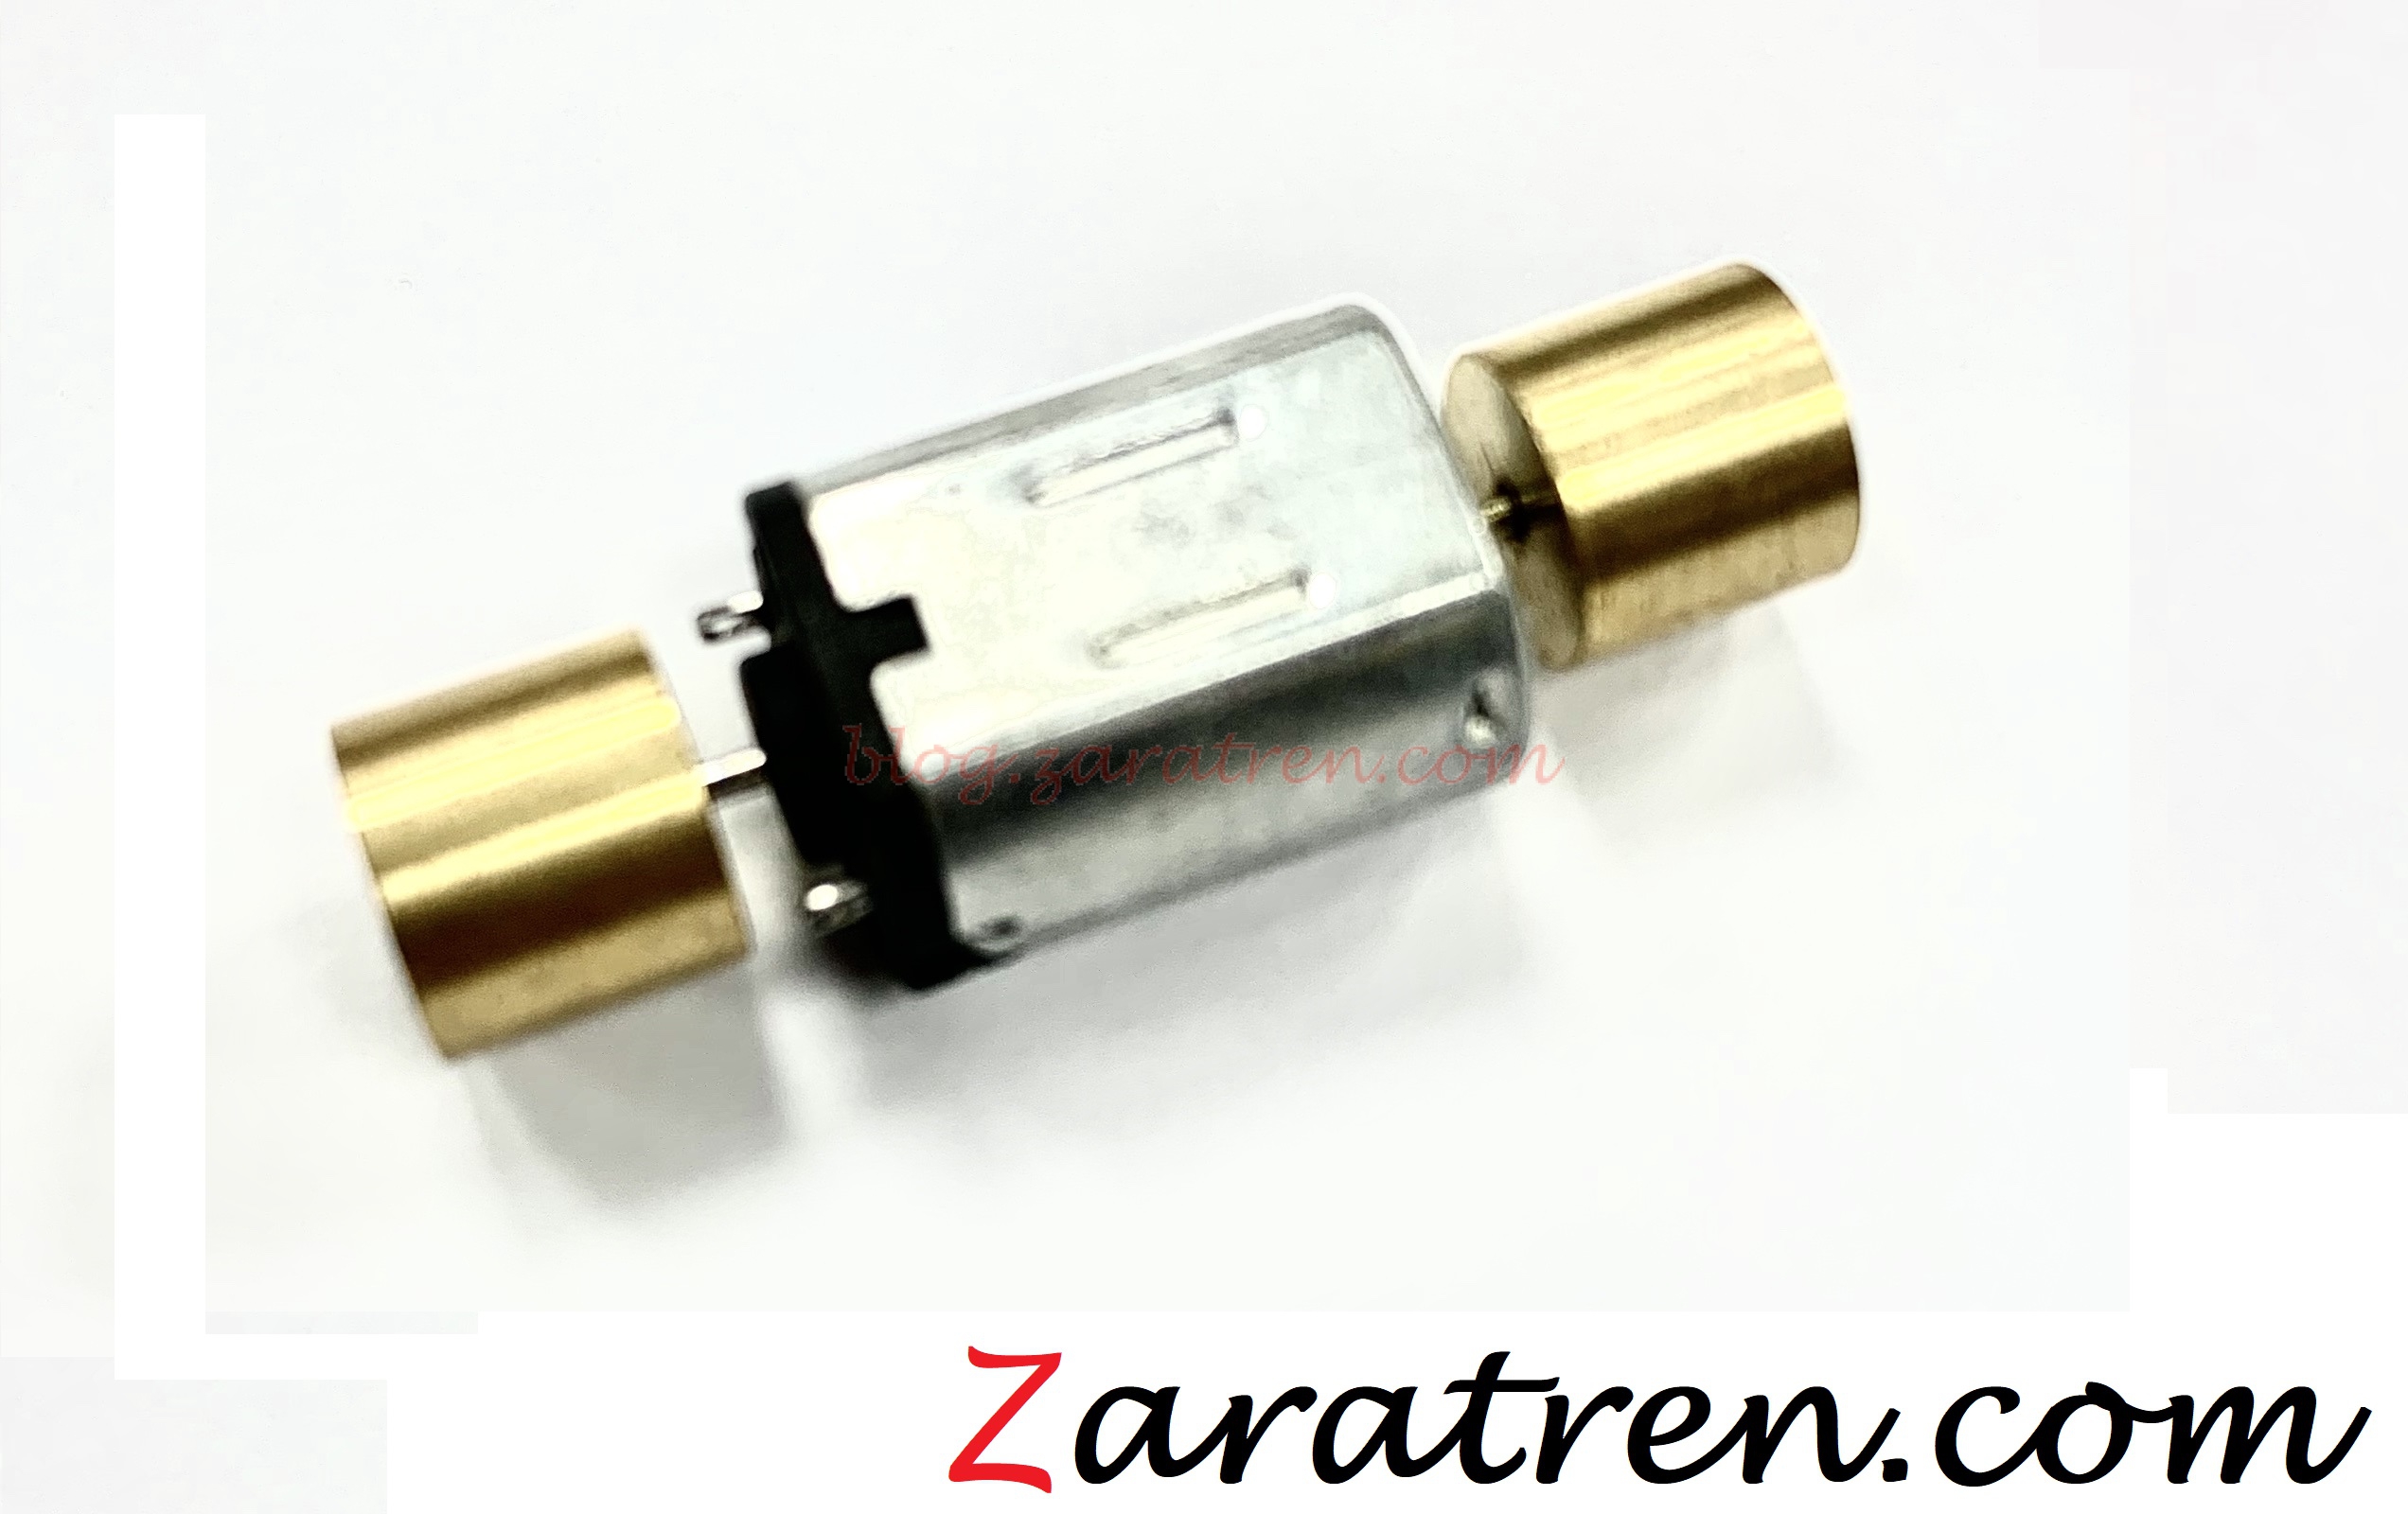 Zaratren – Motor repuesto Zaratren 23,90 x 9,40 x 13,80 mm, Escala N. Ref: ZT-VA9156.